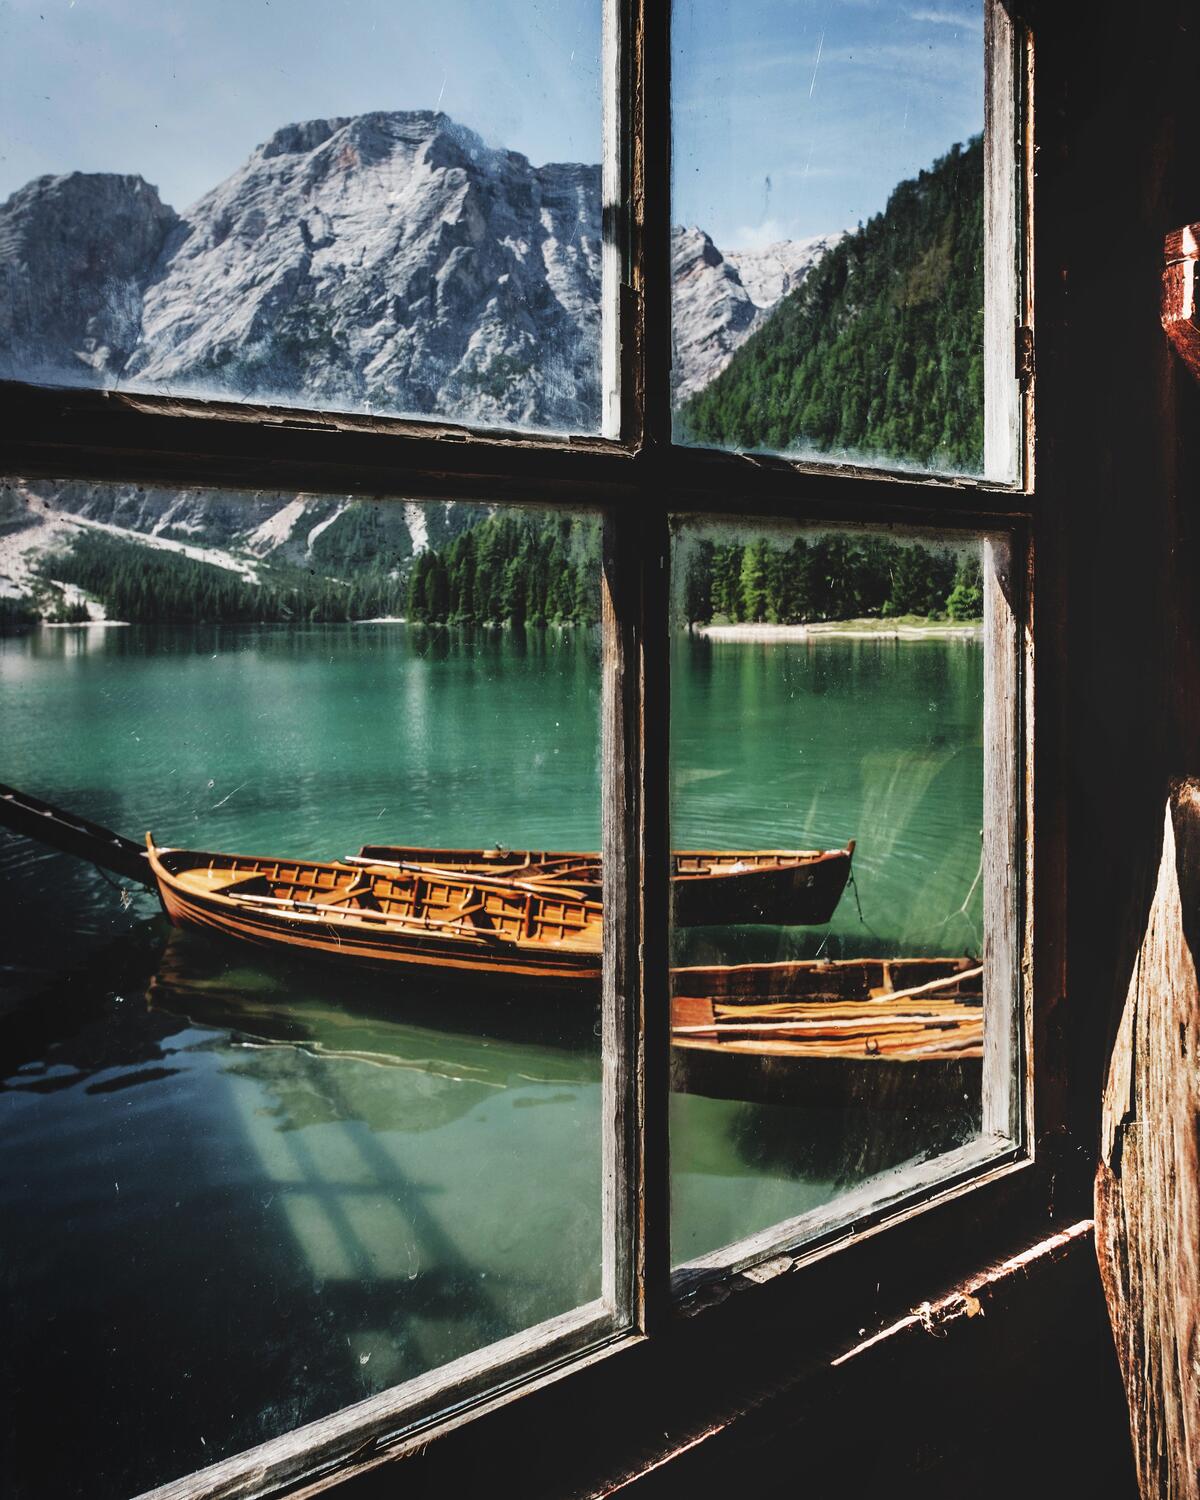 Захватывающий вид из окна рыбацкого домика с видом на озеро с лодками